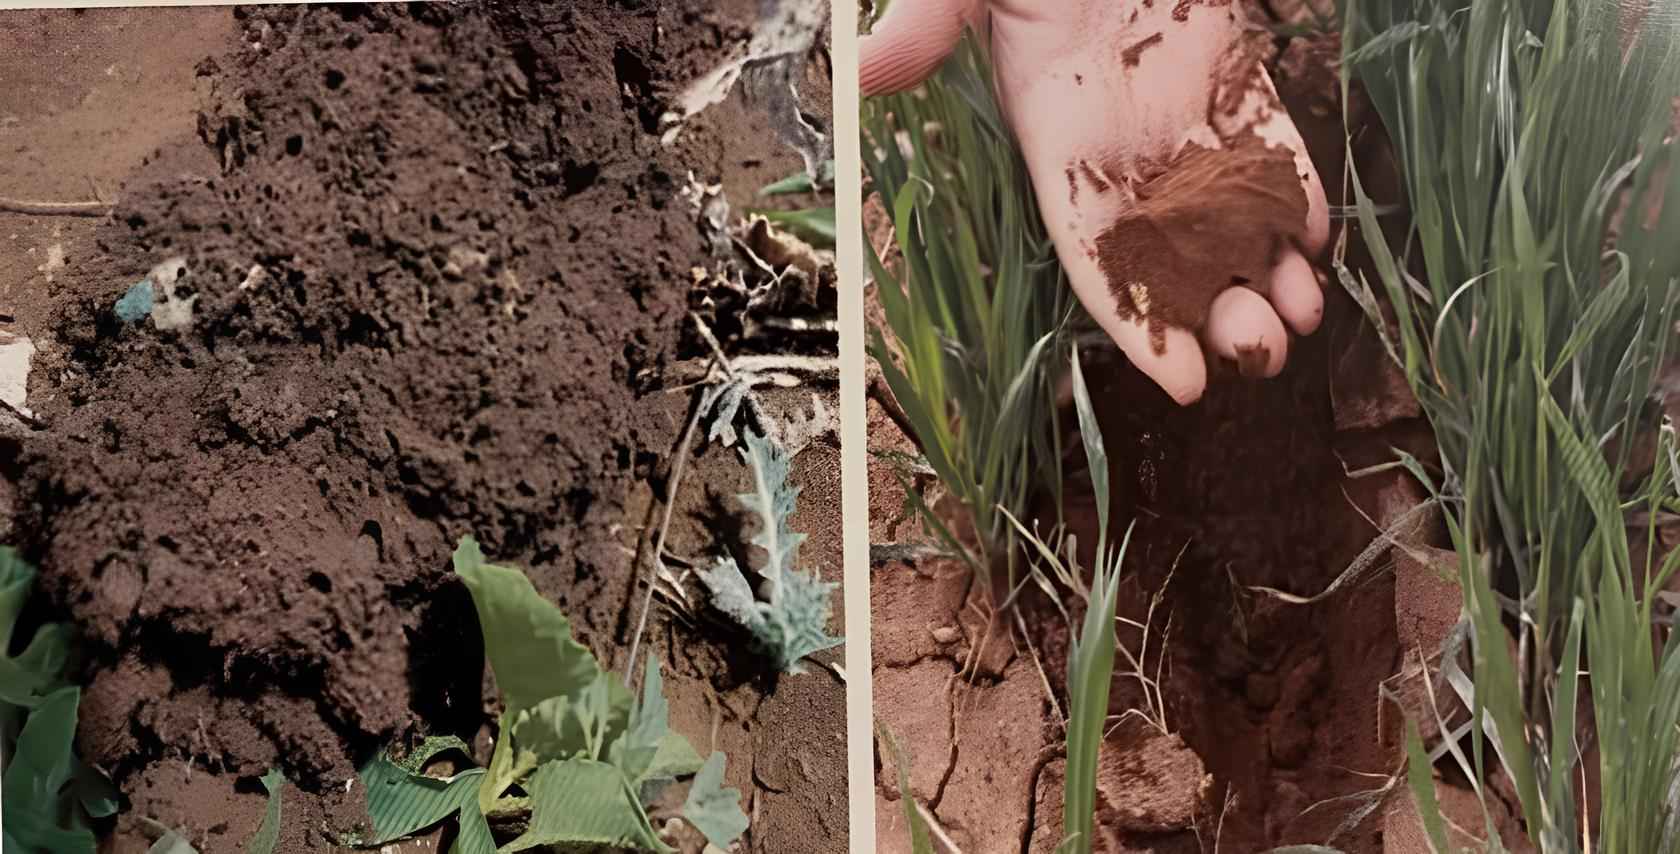 محتوى التربة المائي وثباتية الكتل الترابية تحت نظام الزراعة الحافظة